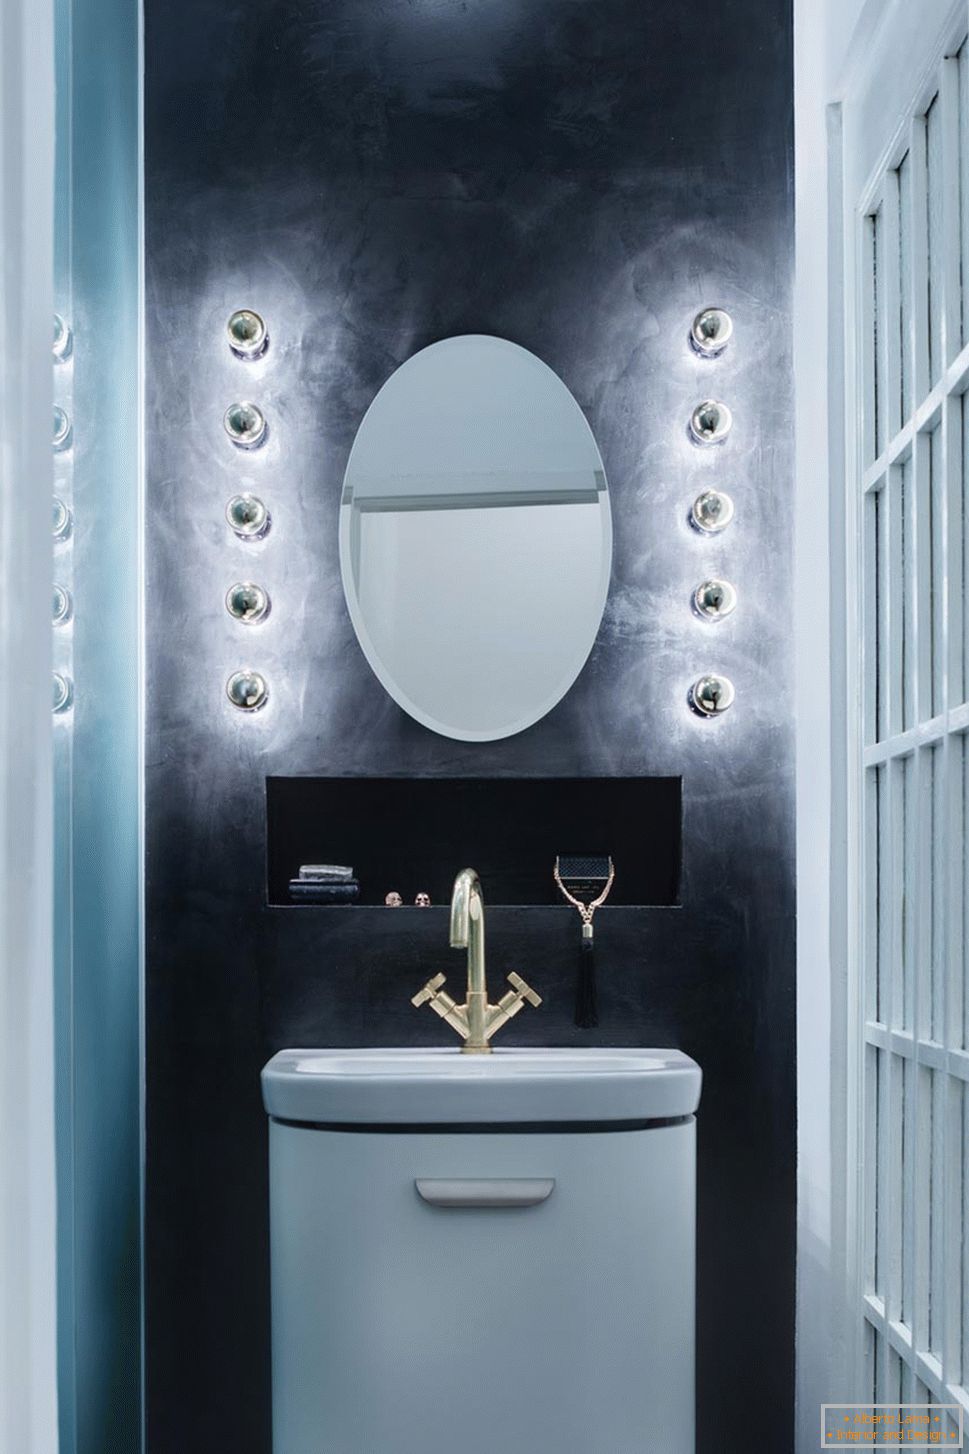 Design moderno de um pequeno apartamento - projeto do banheiro